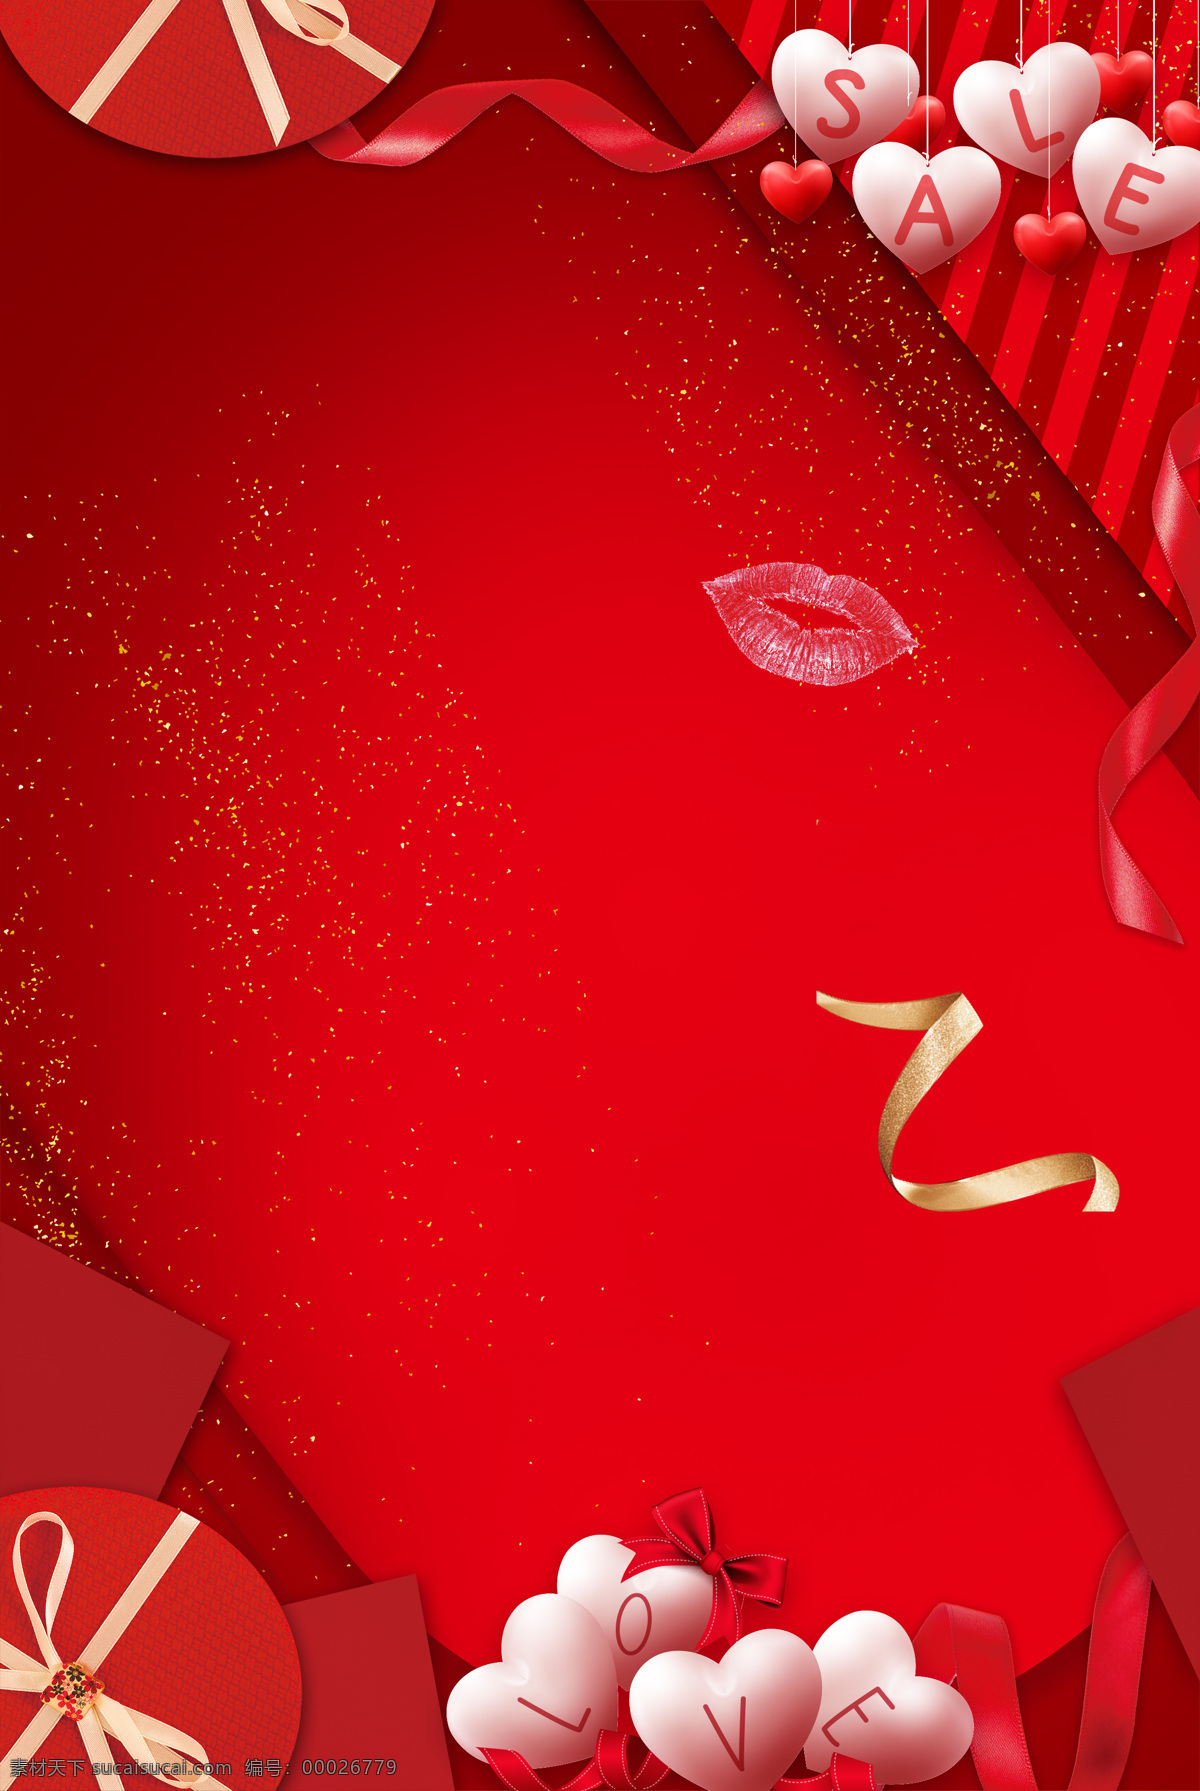 love 爱心 唇印 促销 红色 蝴蝶结 简洁 礼盒 礼物 气球 情人节 商场 丝带 质感 背景 心形